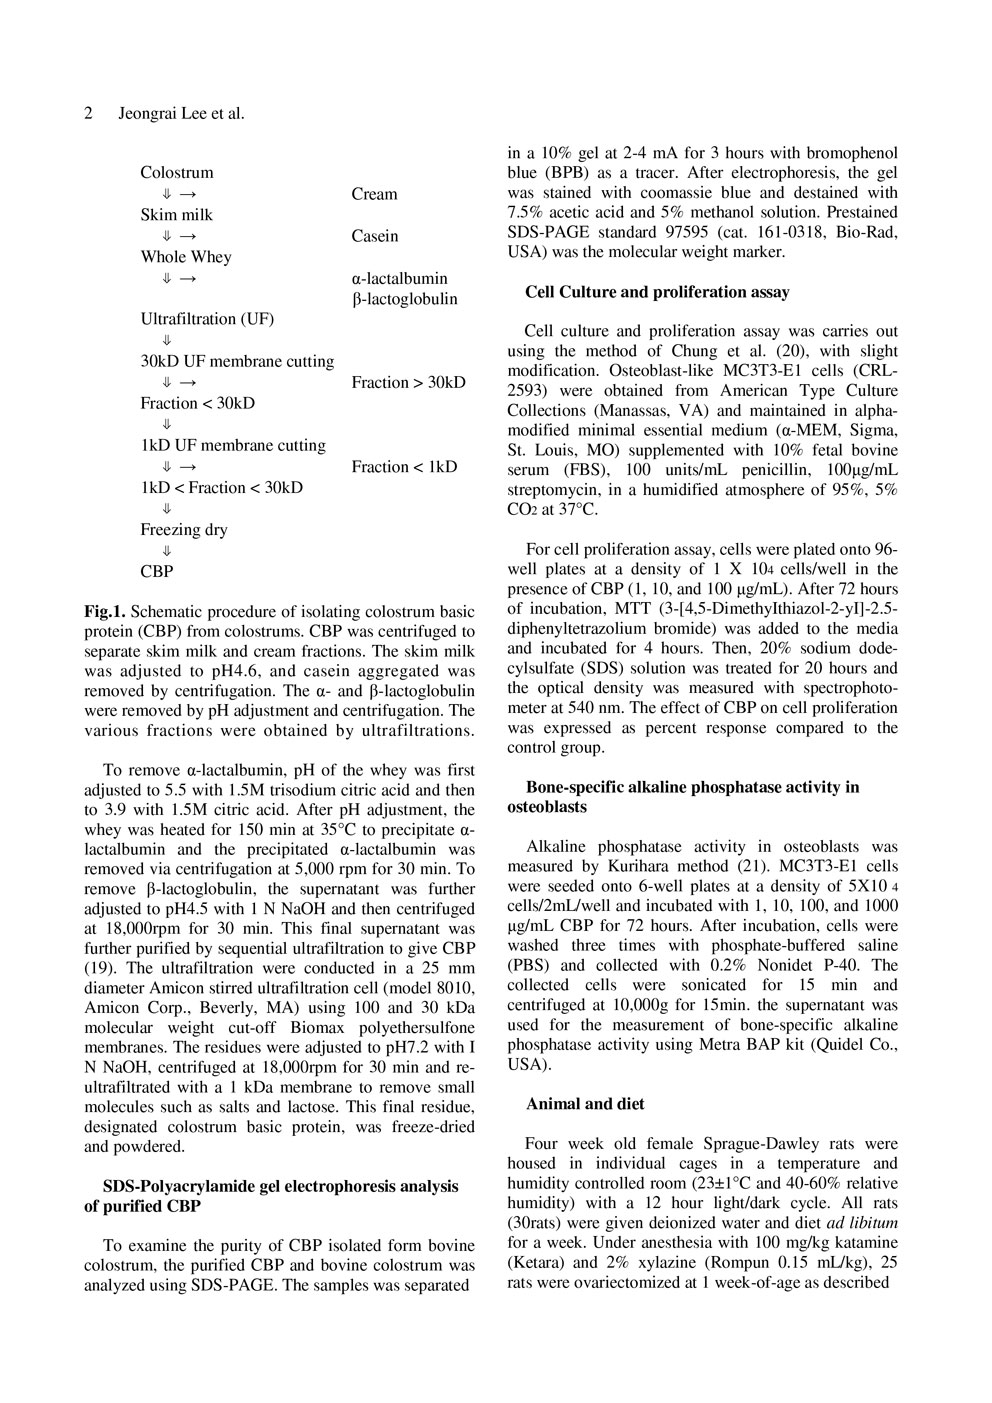 濃縮乳清タンパク質（CBP）の効果：骨芽細胞増殖と骨代謝の促進作用 ページ2